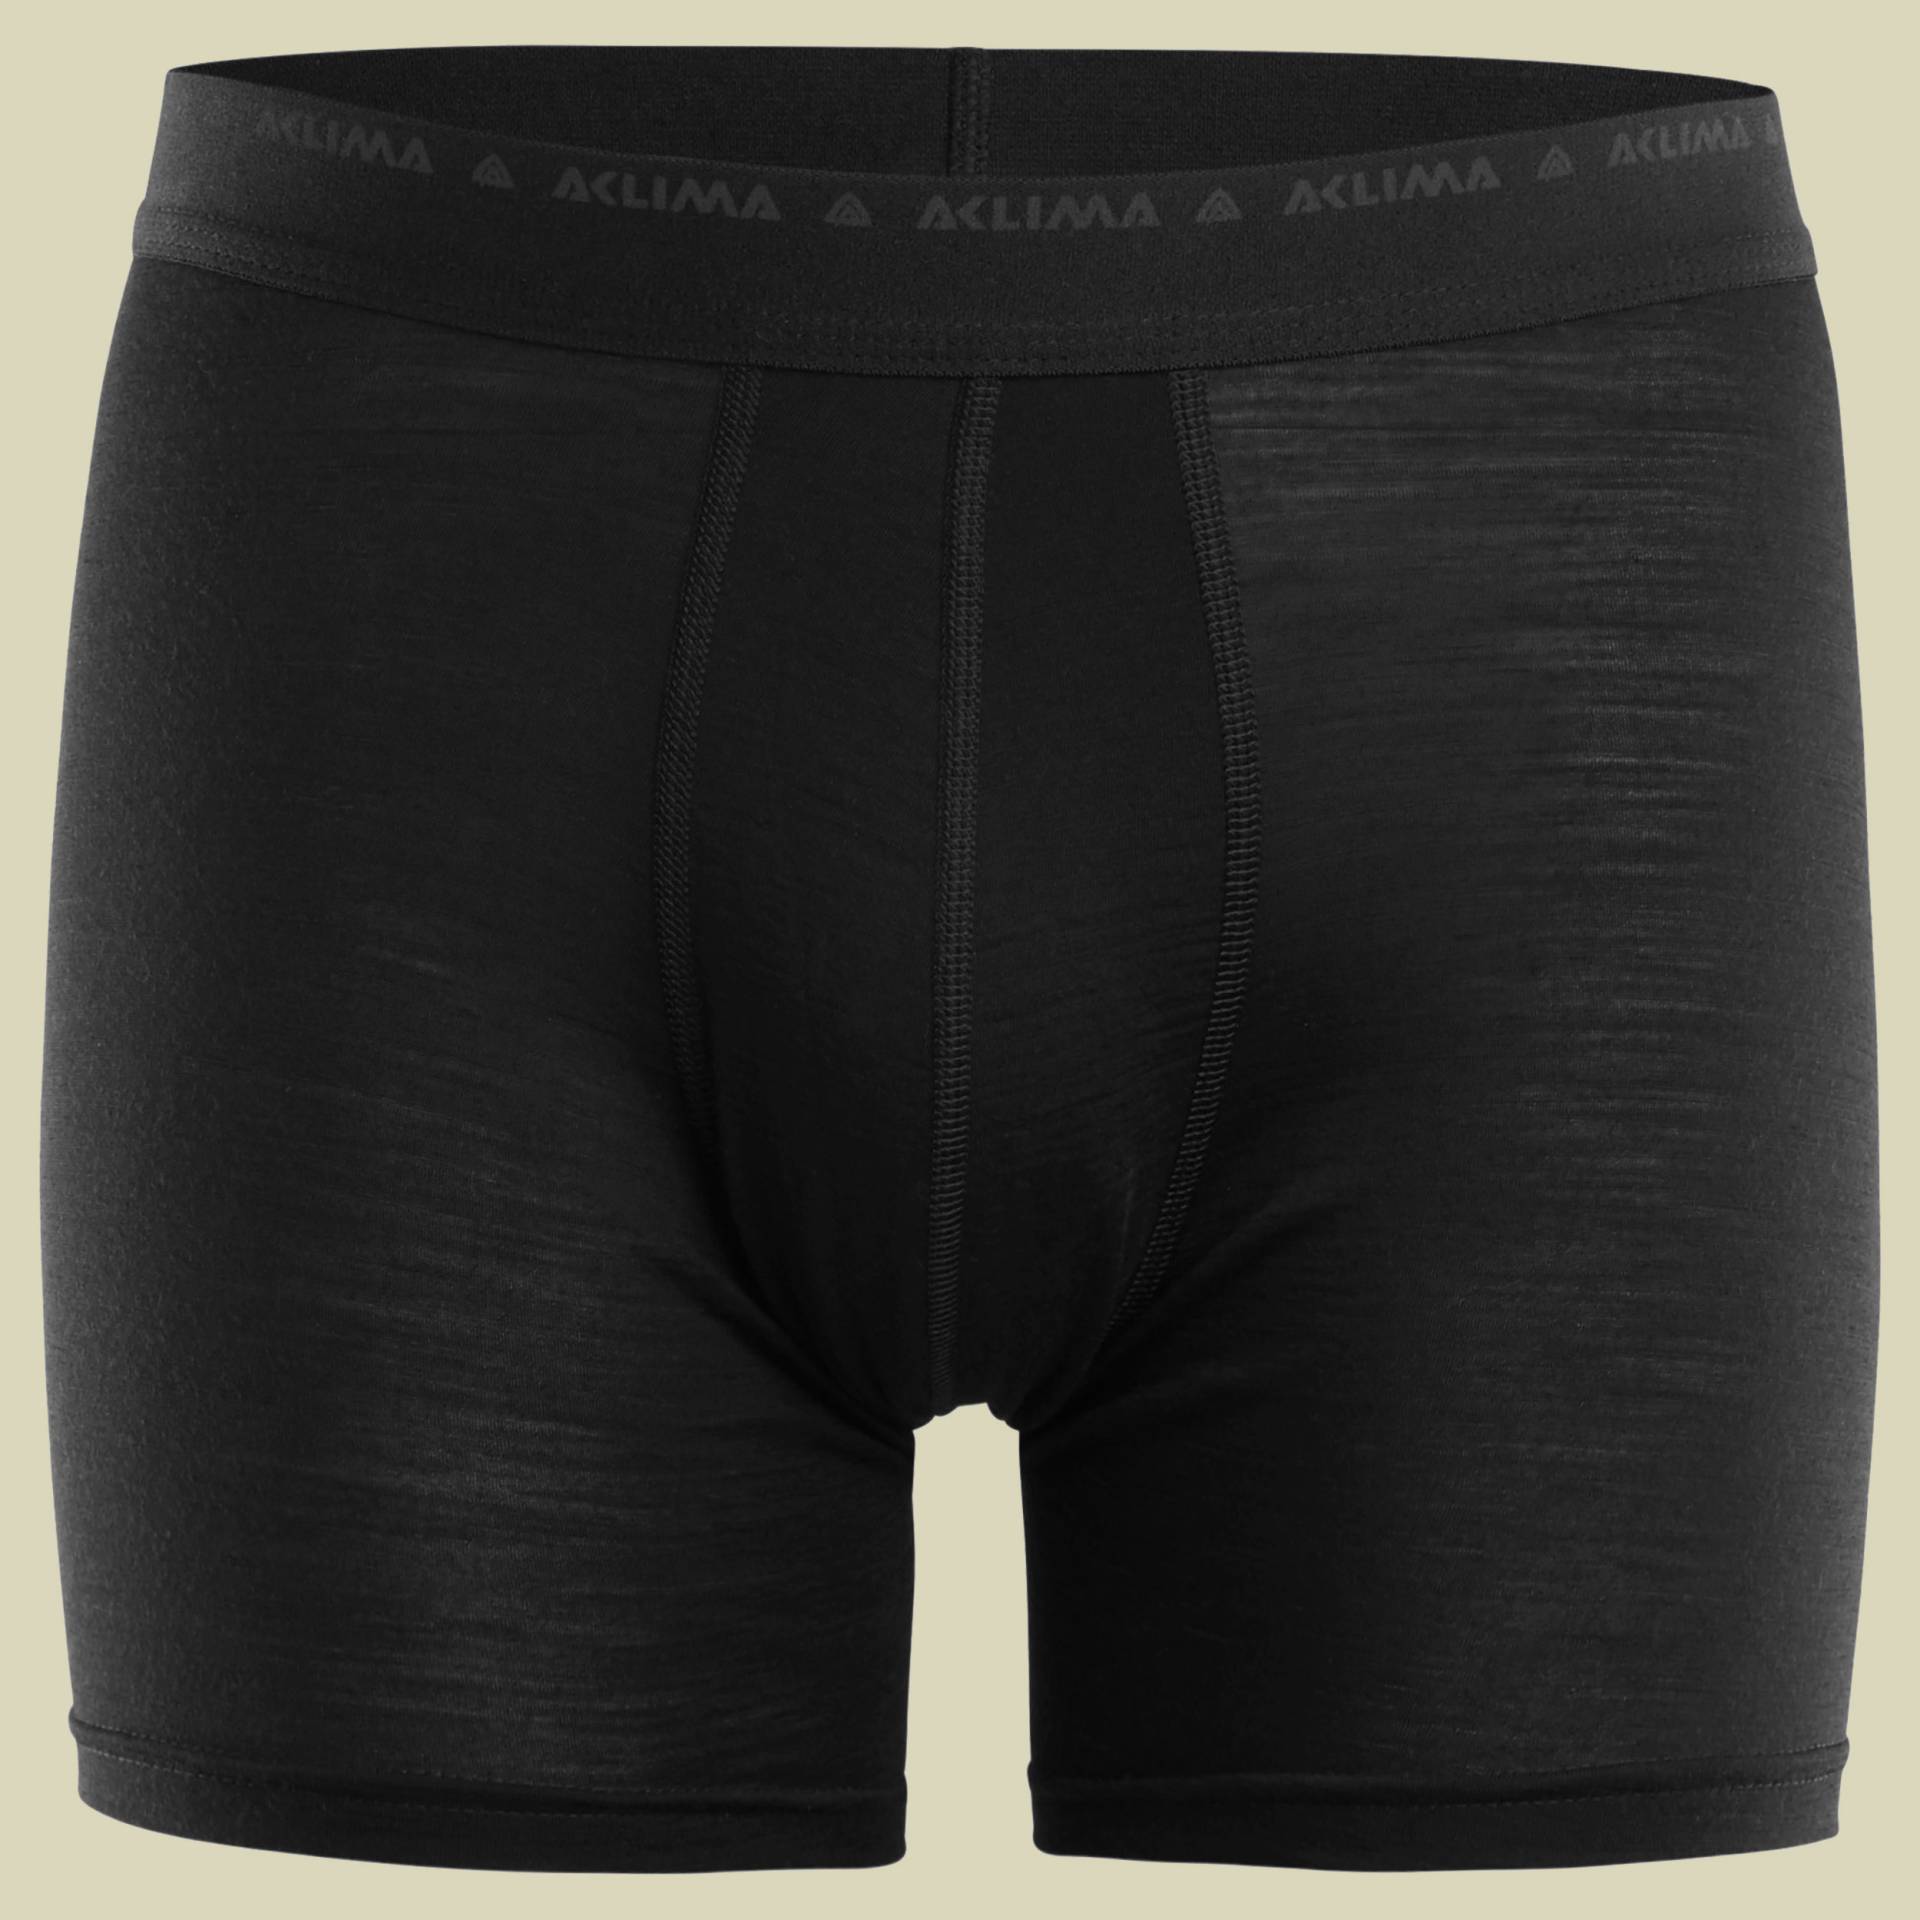 LightWool Shorts/Boxer Men Größe L  Farbe jet black von aclima